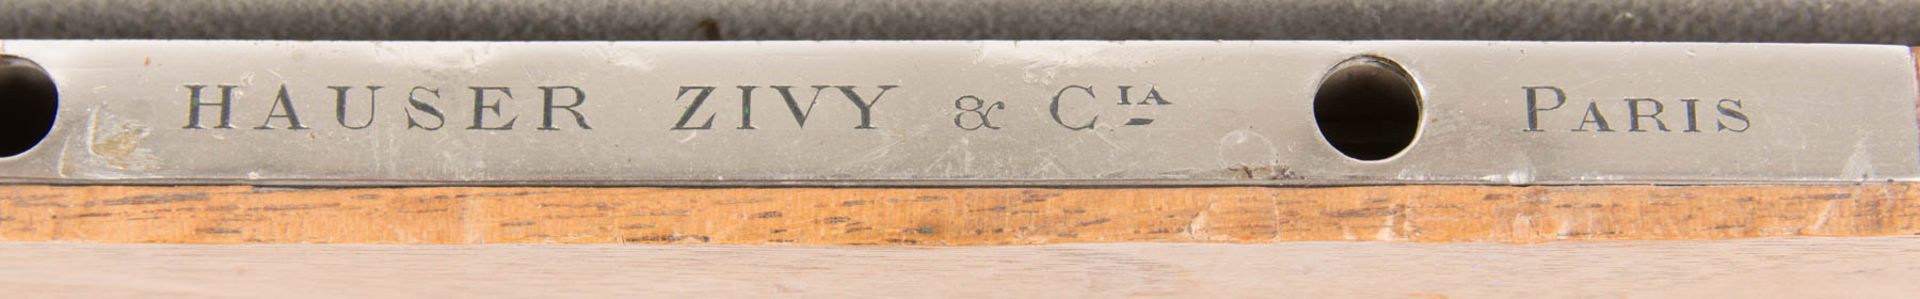 Herausragendes Besteckset der Marke Hauser Zivy & Cie, 950er Silber, Paris, 19. Jh. - Bild 25 aus 27